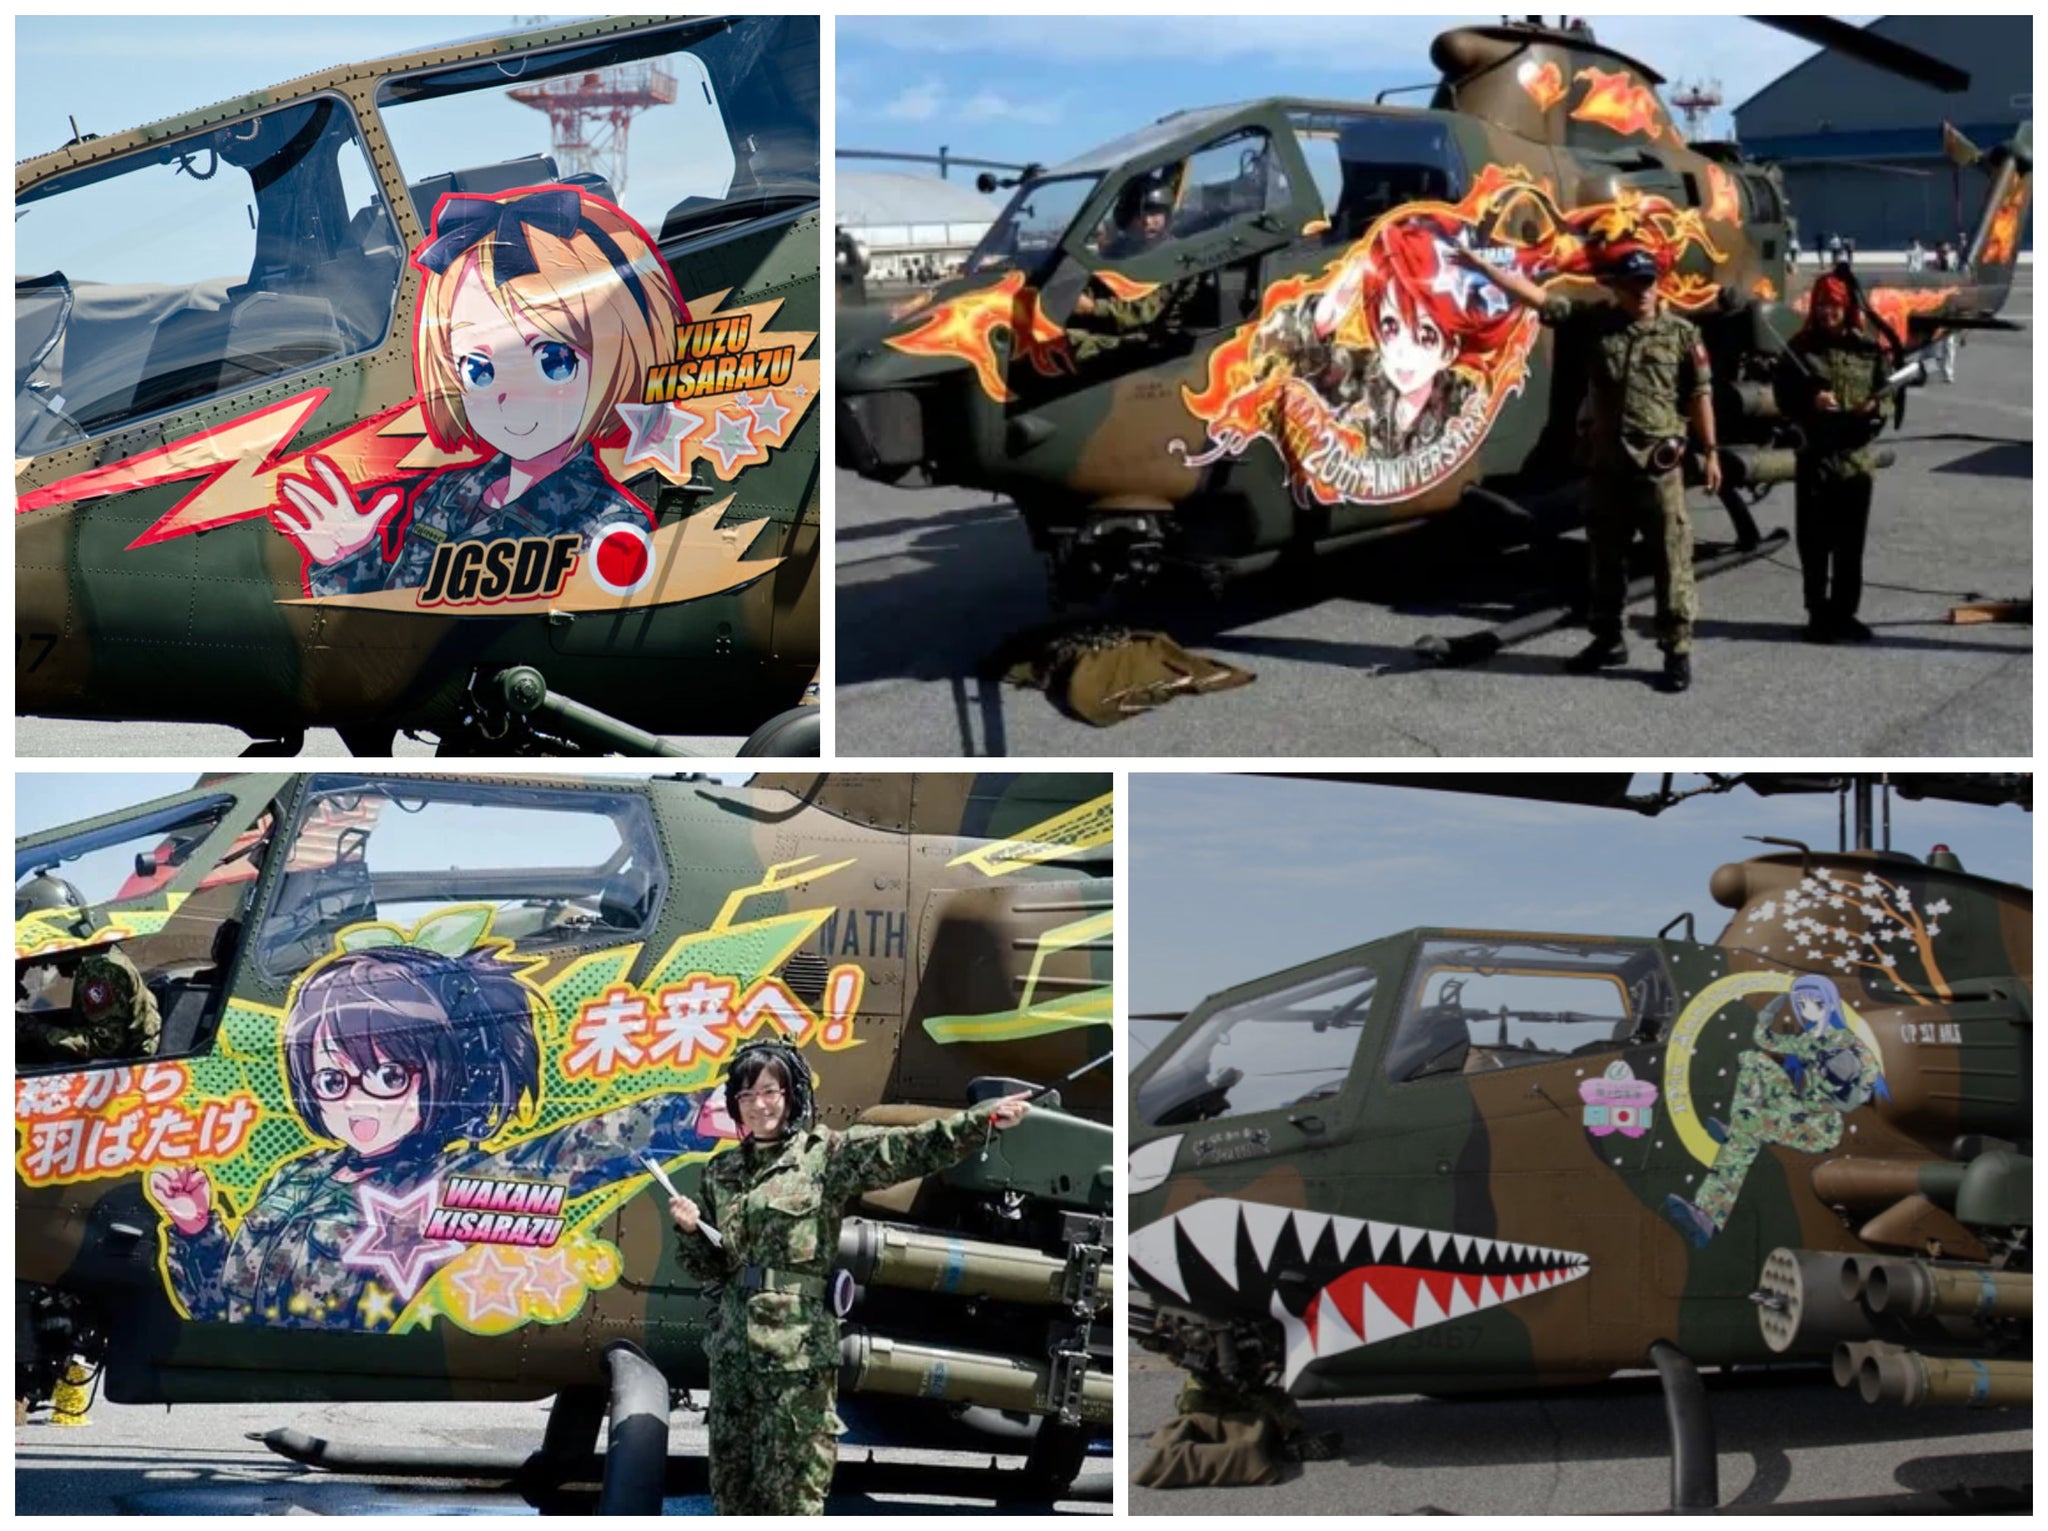 Itasha helicopters